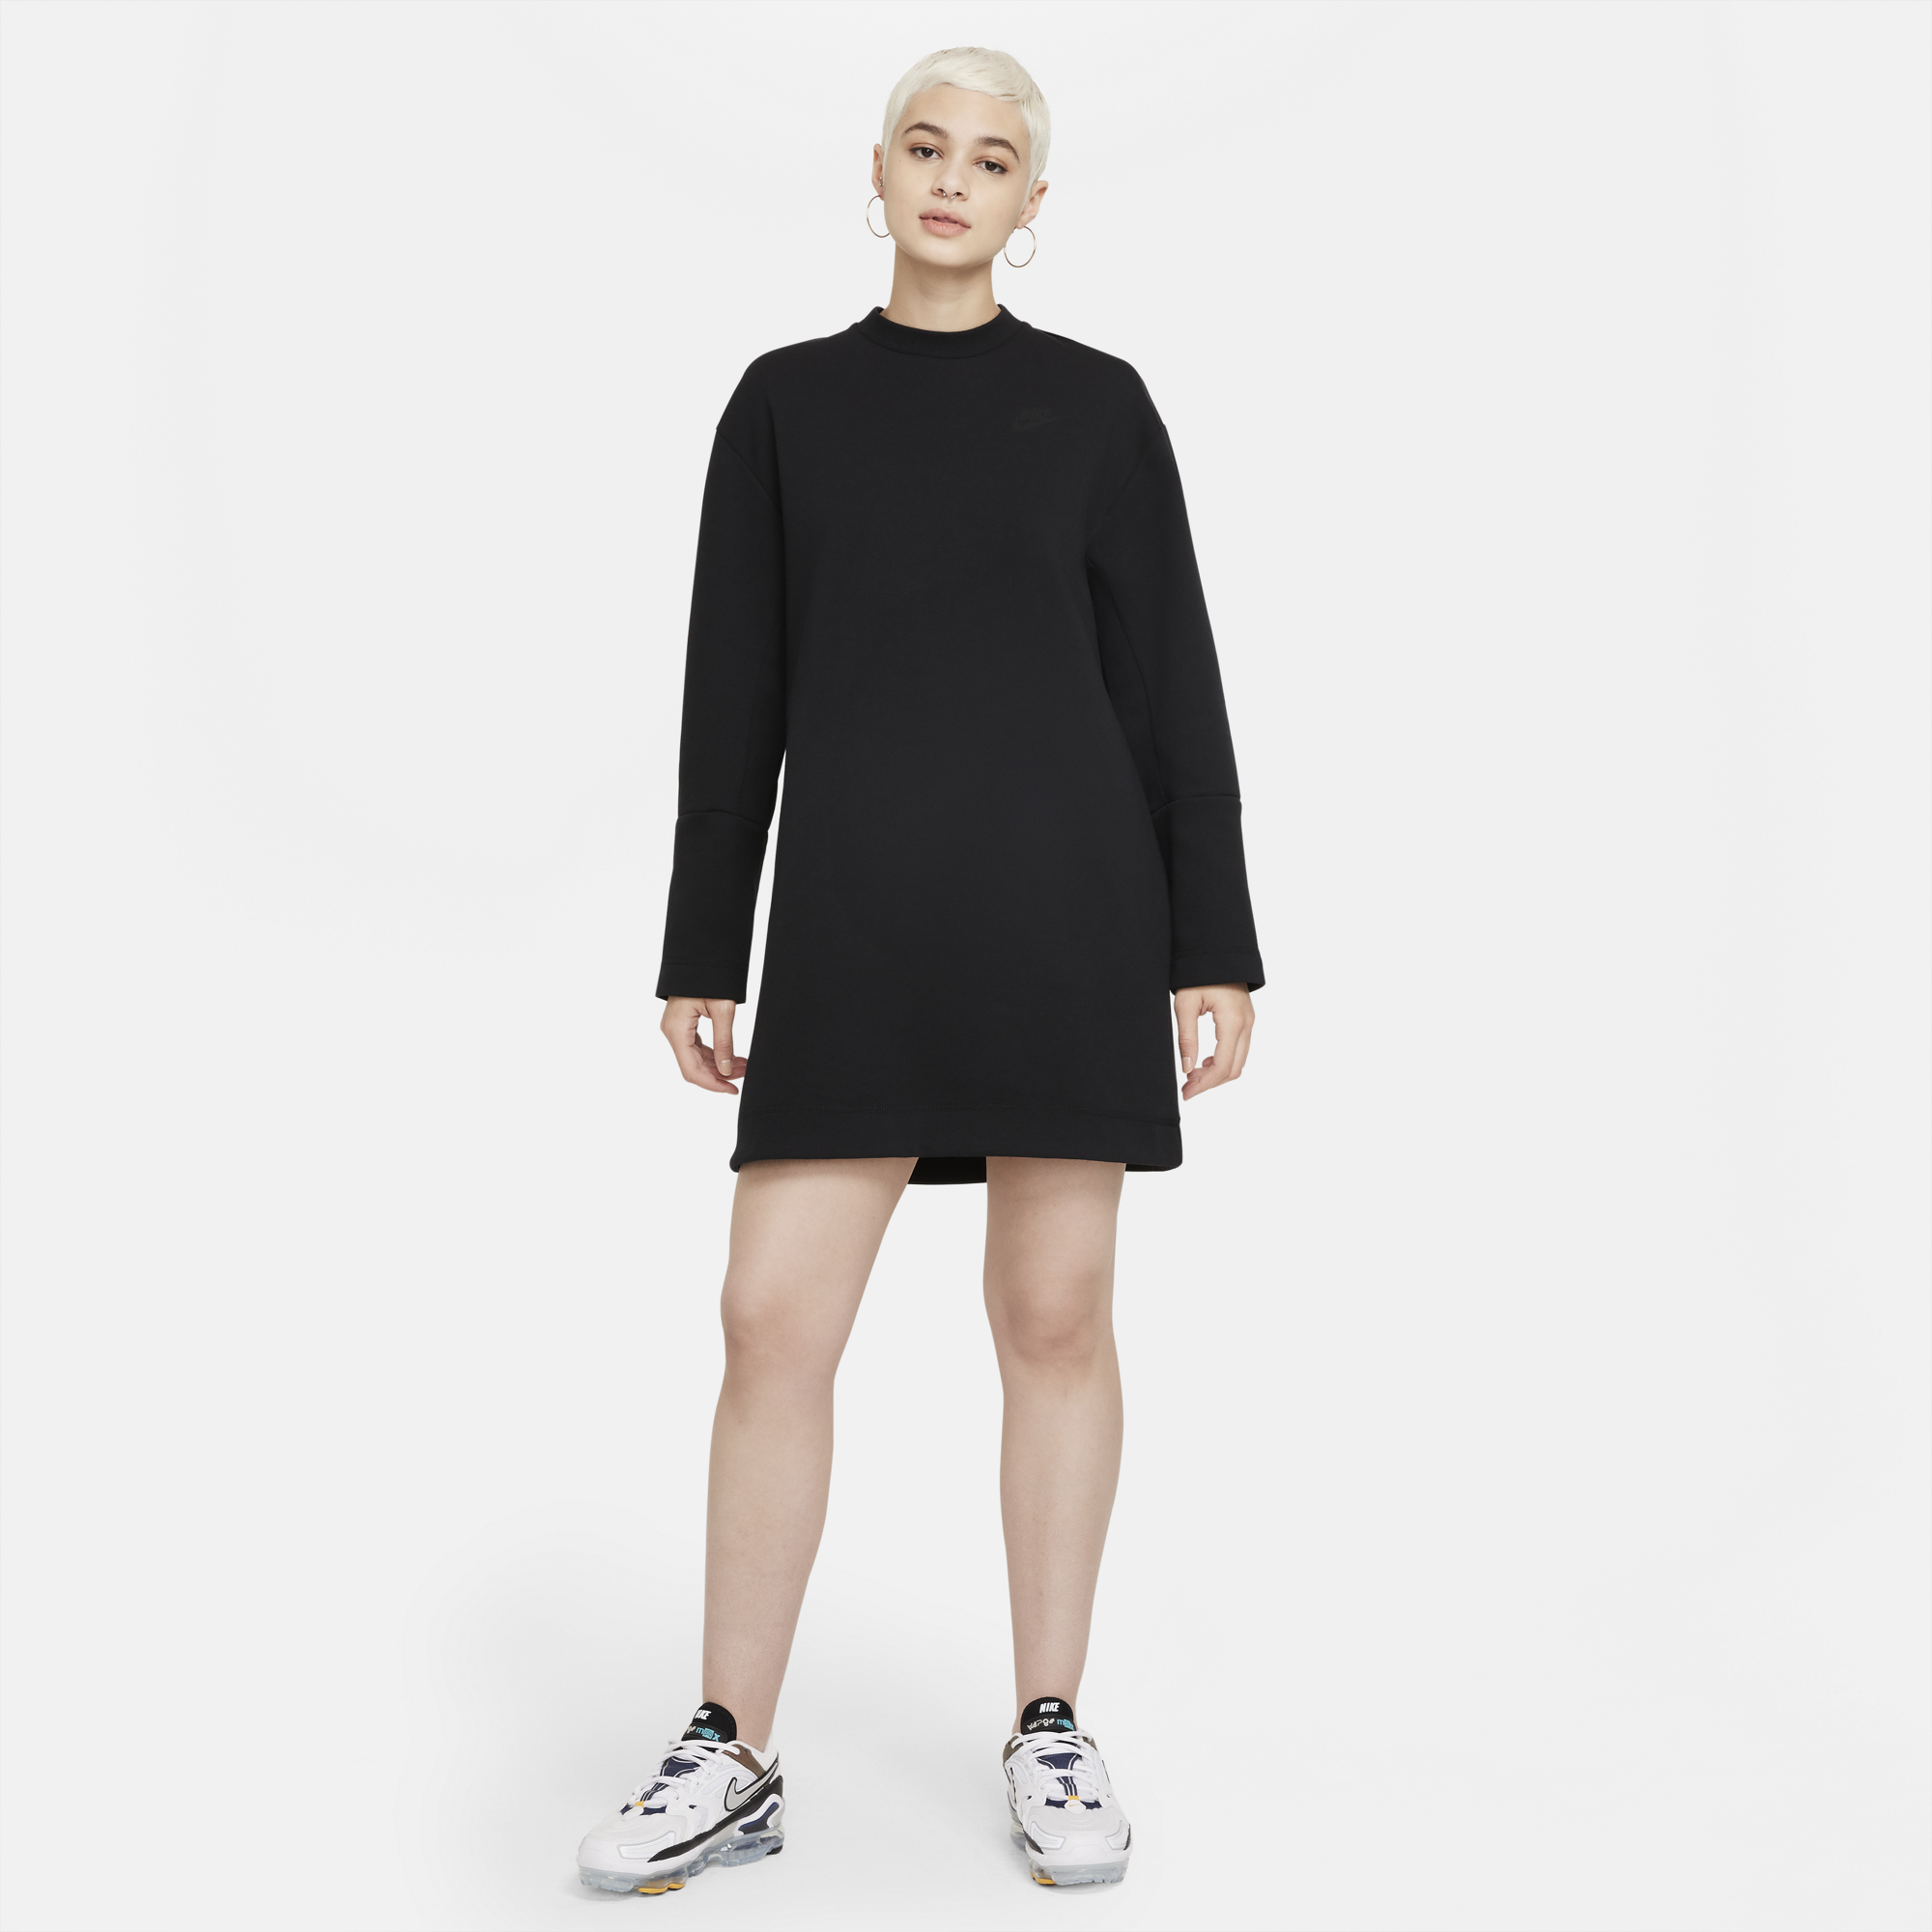 Nike Women's Tech Fleece Long Sleeve Dress (Black)